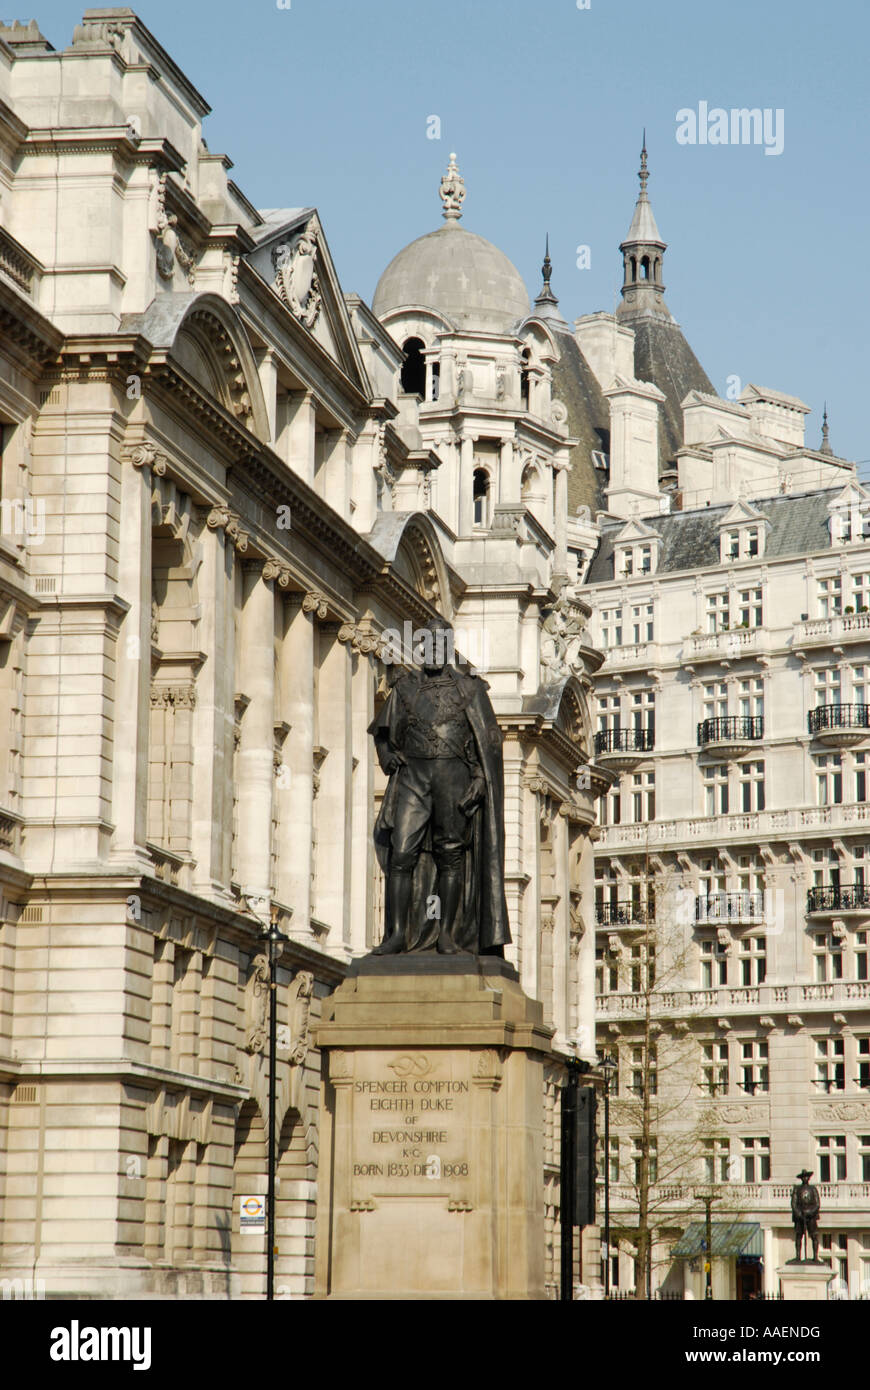 Statue de Spencer Compton contre l'imposante architecture de Horse Guards Avenue Londres Angleterre Banque D'Images